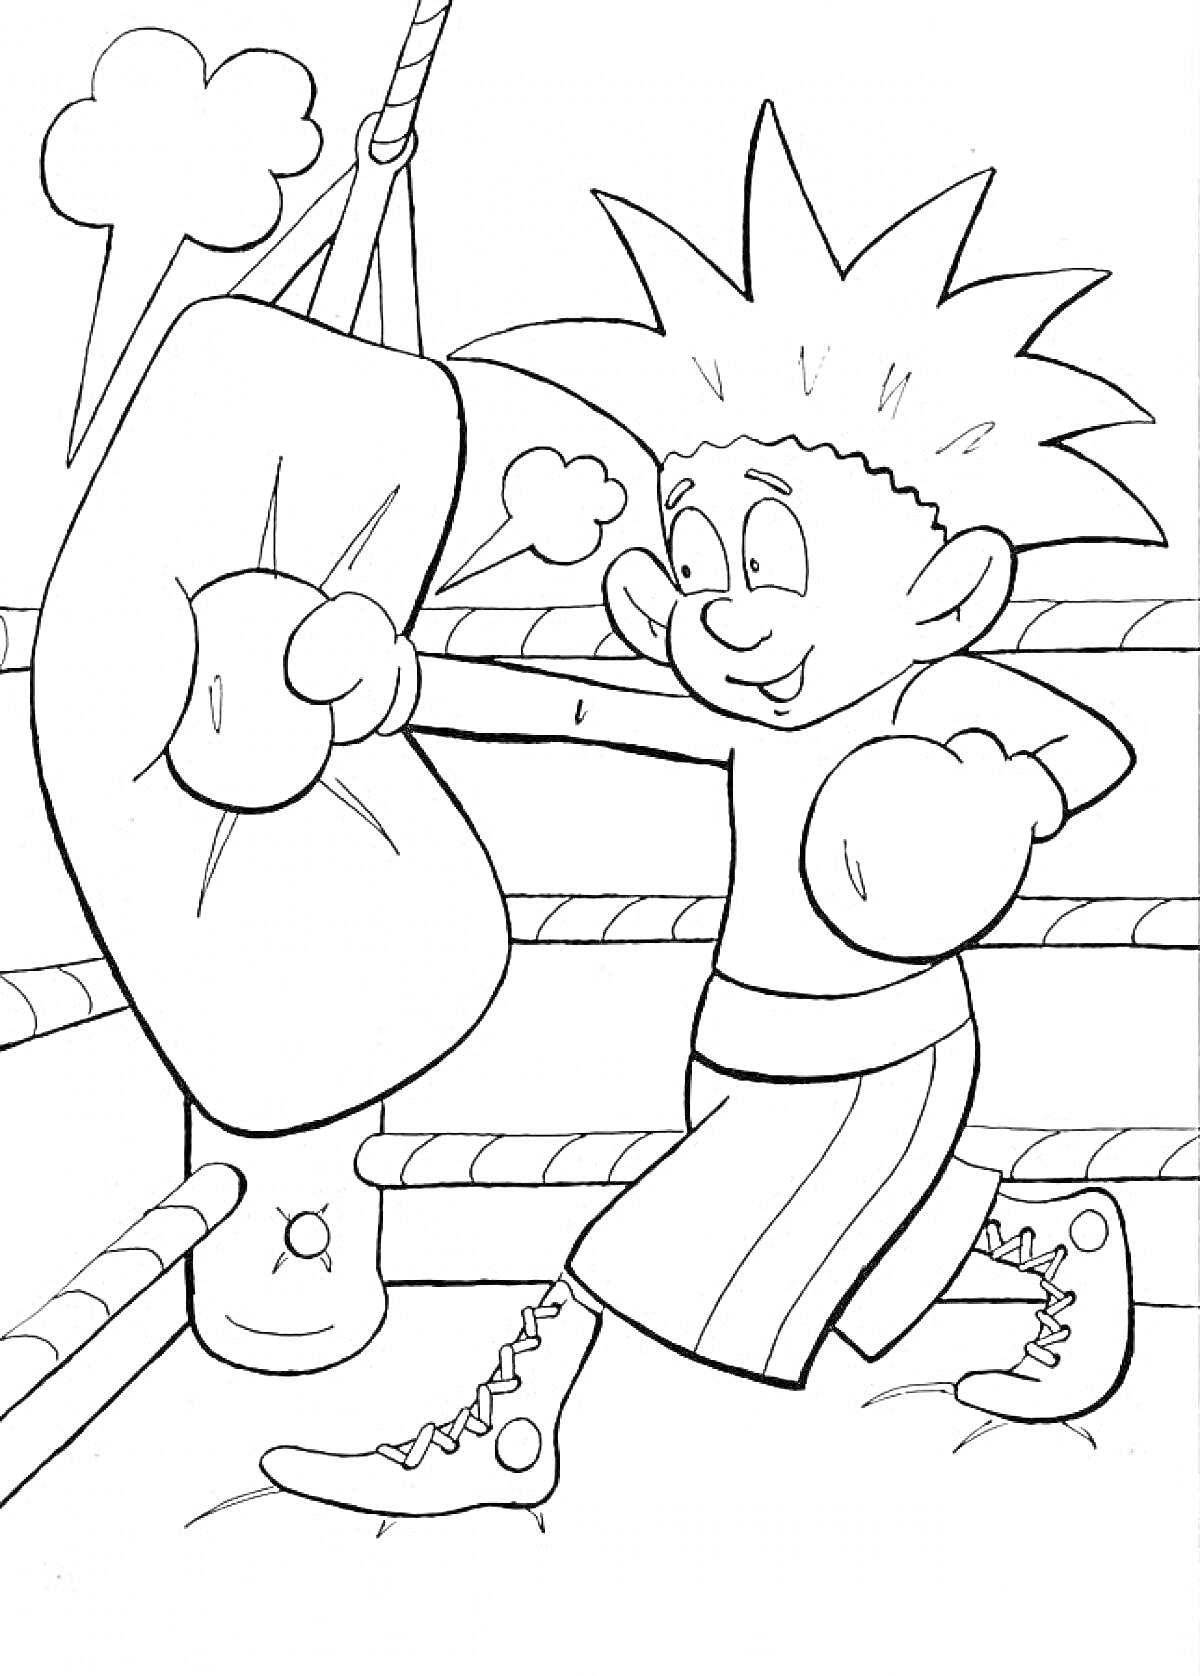 Раскраска Мальчик в боксерских перчатках на ринге бьет по боксерской груше